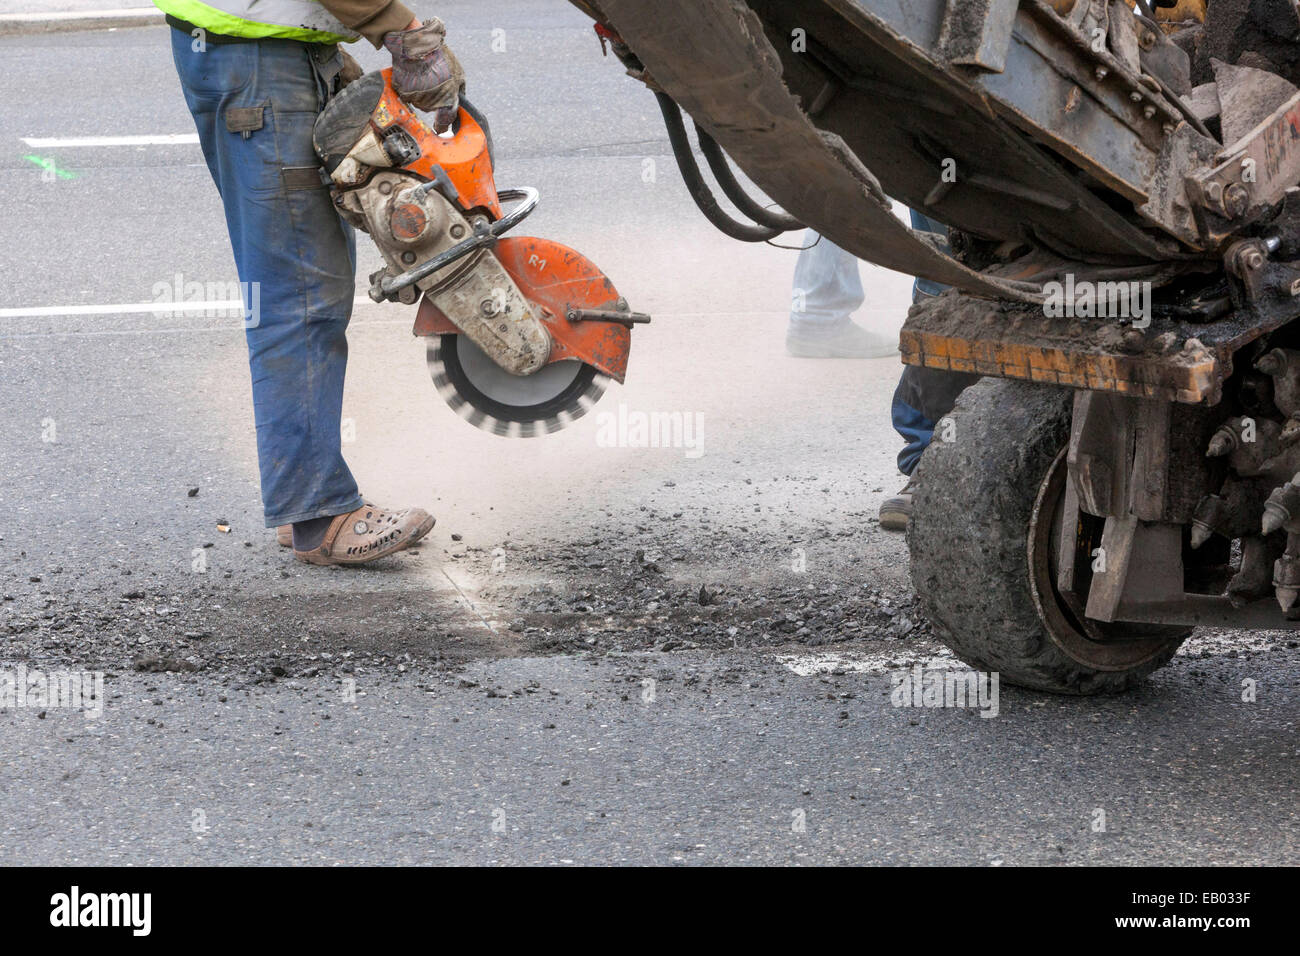 Un homme travaille couper la route d'asphalte avec un tailleur de diamants, pas de travail de protection gear, République Tchèque Banque D'Images